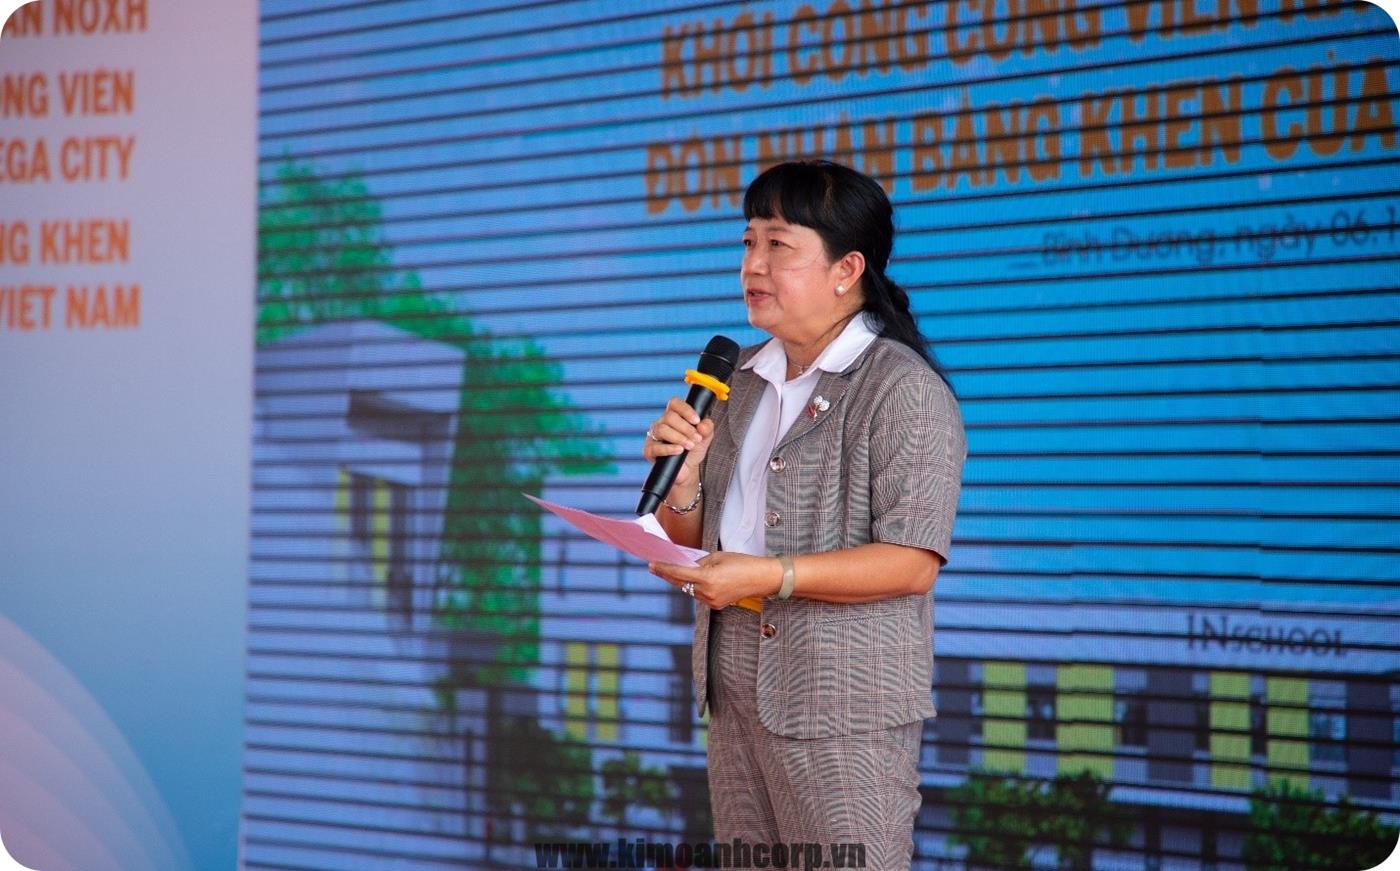 Bà Phạm Thanh Tuyền - Phó Trưởng Ban Công tác phía Nam Ủy ban Trung ương MTTQ Việt Nam công bố quyết định khen thưởng cho tập thể, cá nhân Quỹ Từ thiện Kim Oanh.